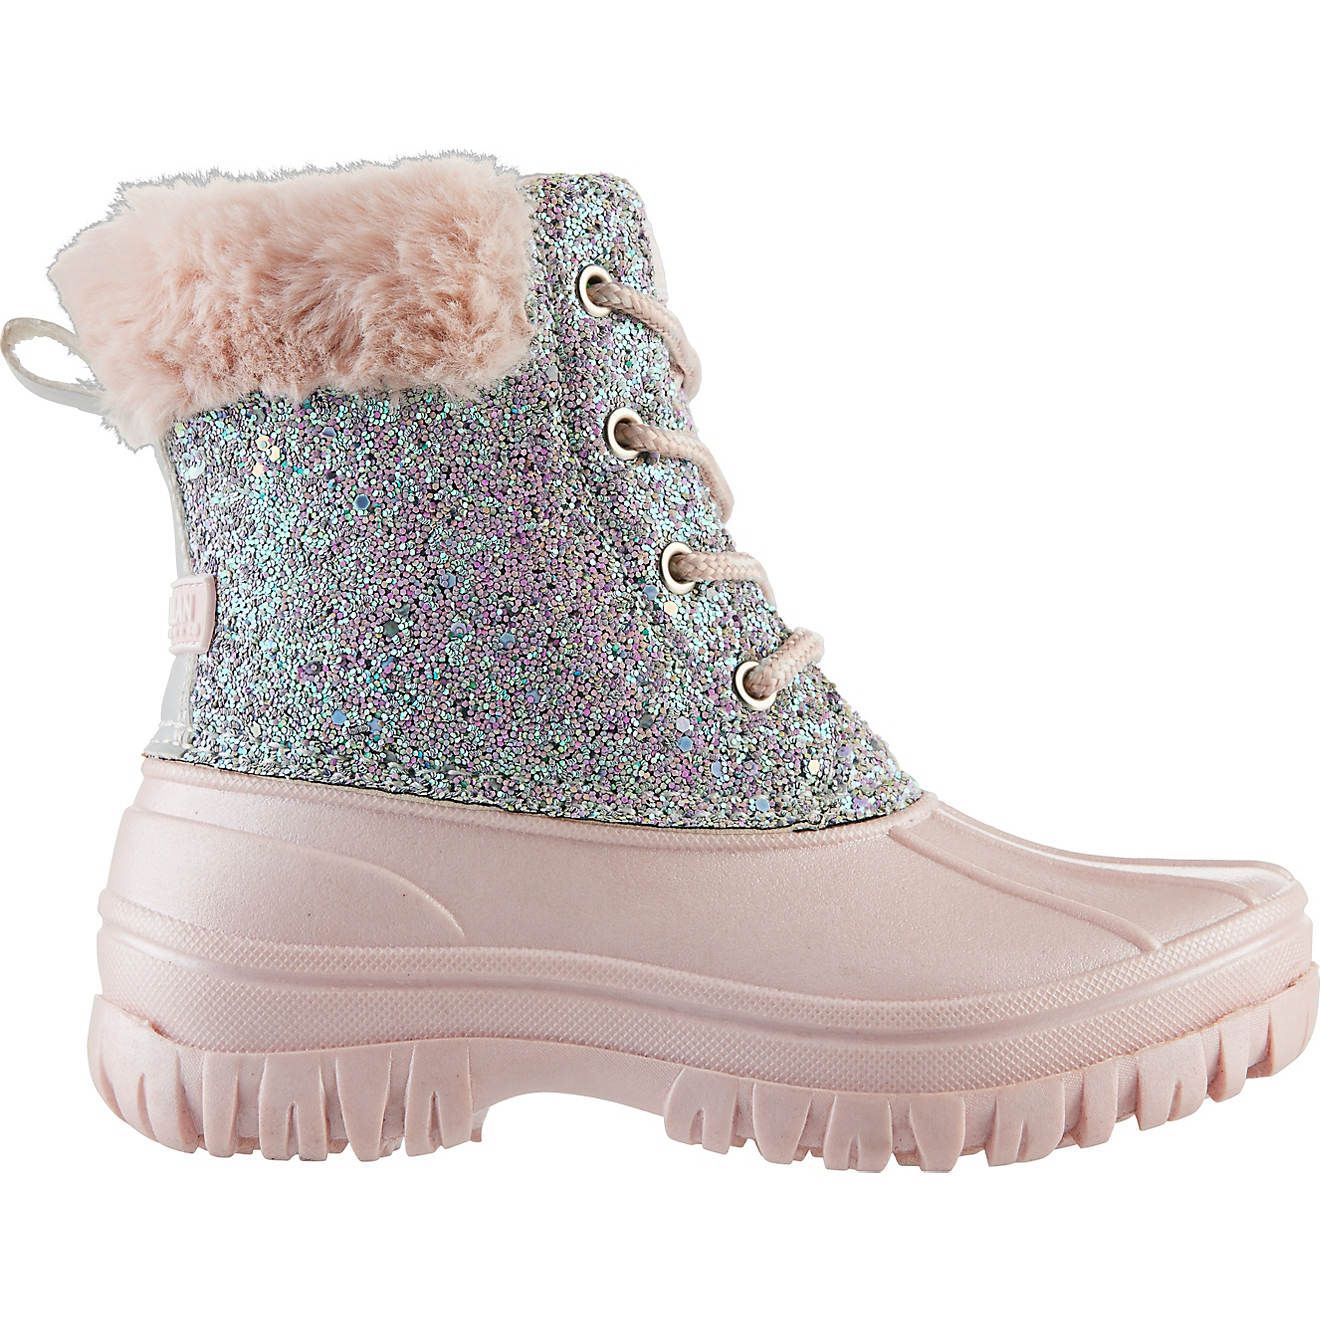 Magellan Outdoors Girls' Glitter Boots | Academy | Academy Sports + Outdoors